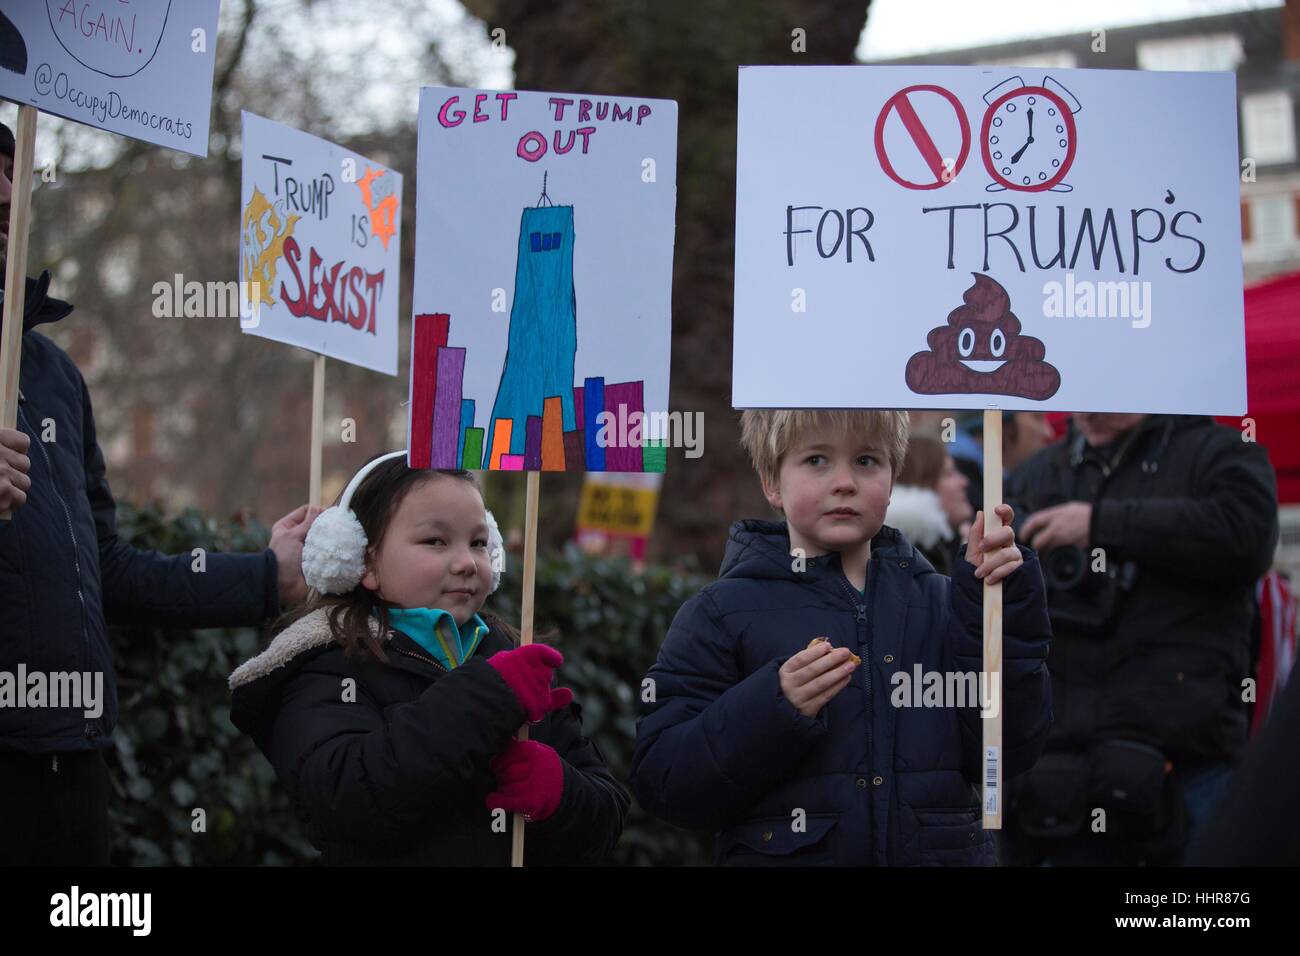 Londres, Royaume-Uni. 20 Jan, 2017. Anti-Trump protester US Embassy, Grosvenor Square, London, UK. ce soir protester contre l'investiture du président américain Donald Trump à l'extérieur de l'ambassade américaine de Londres Banque D'Images